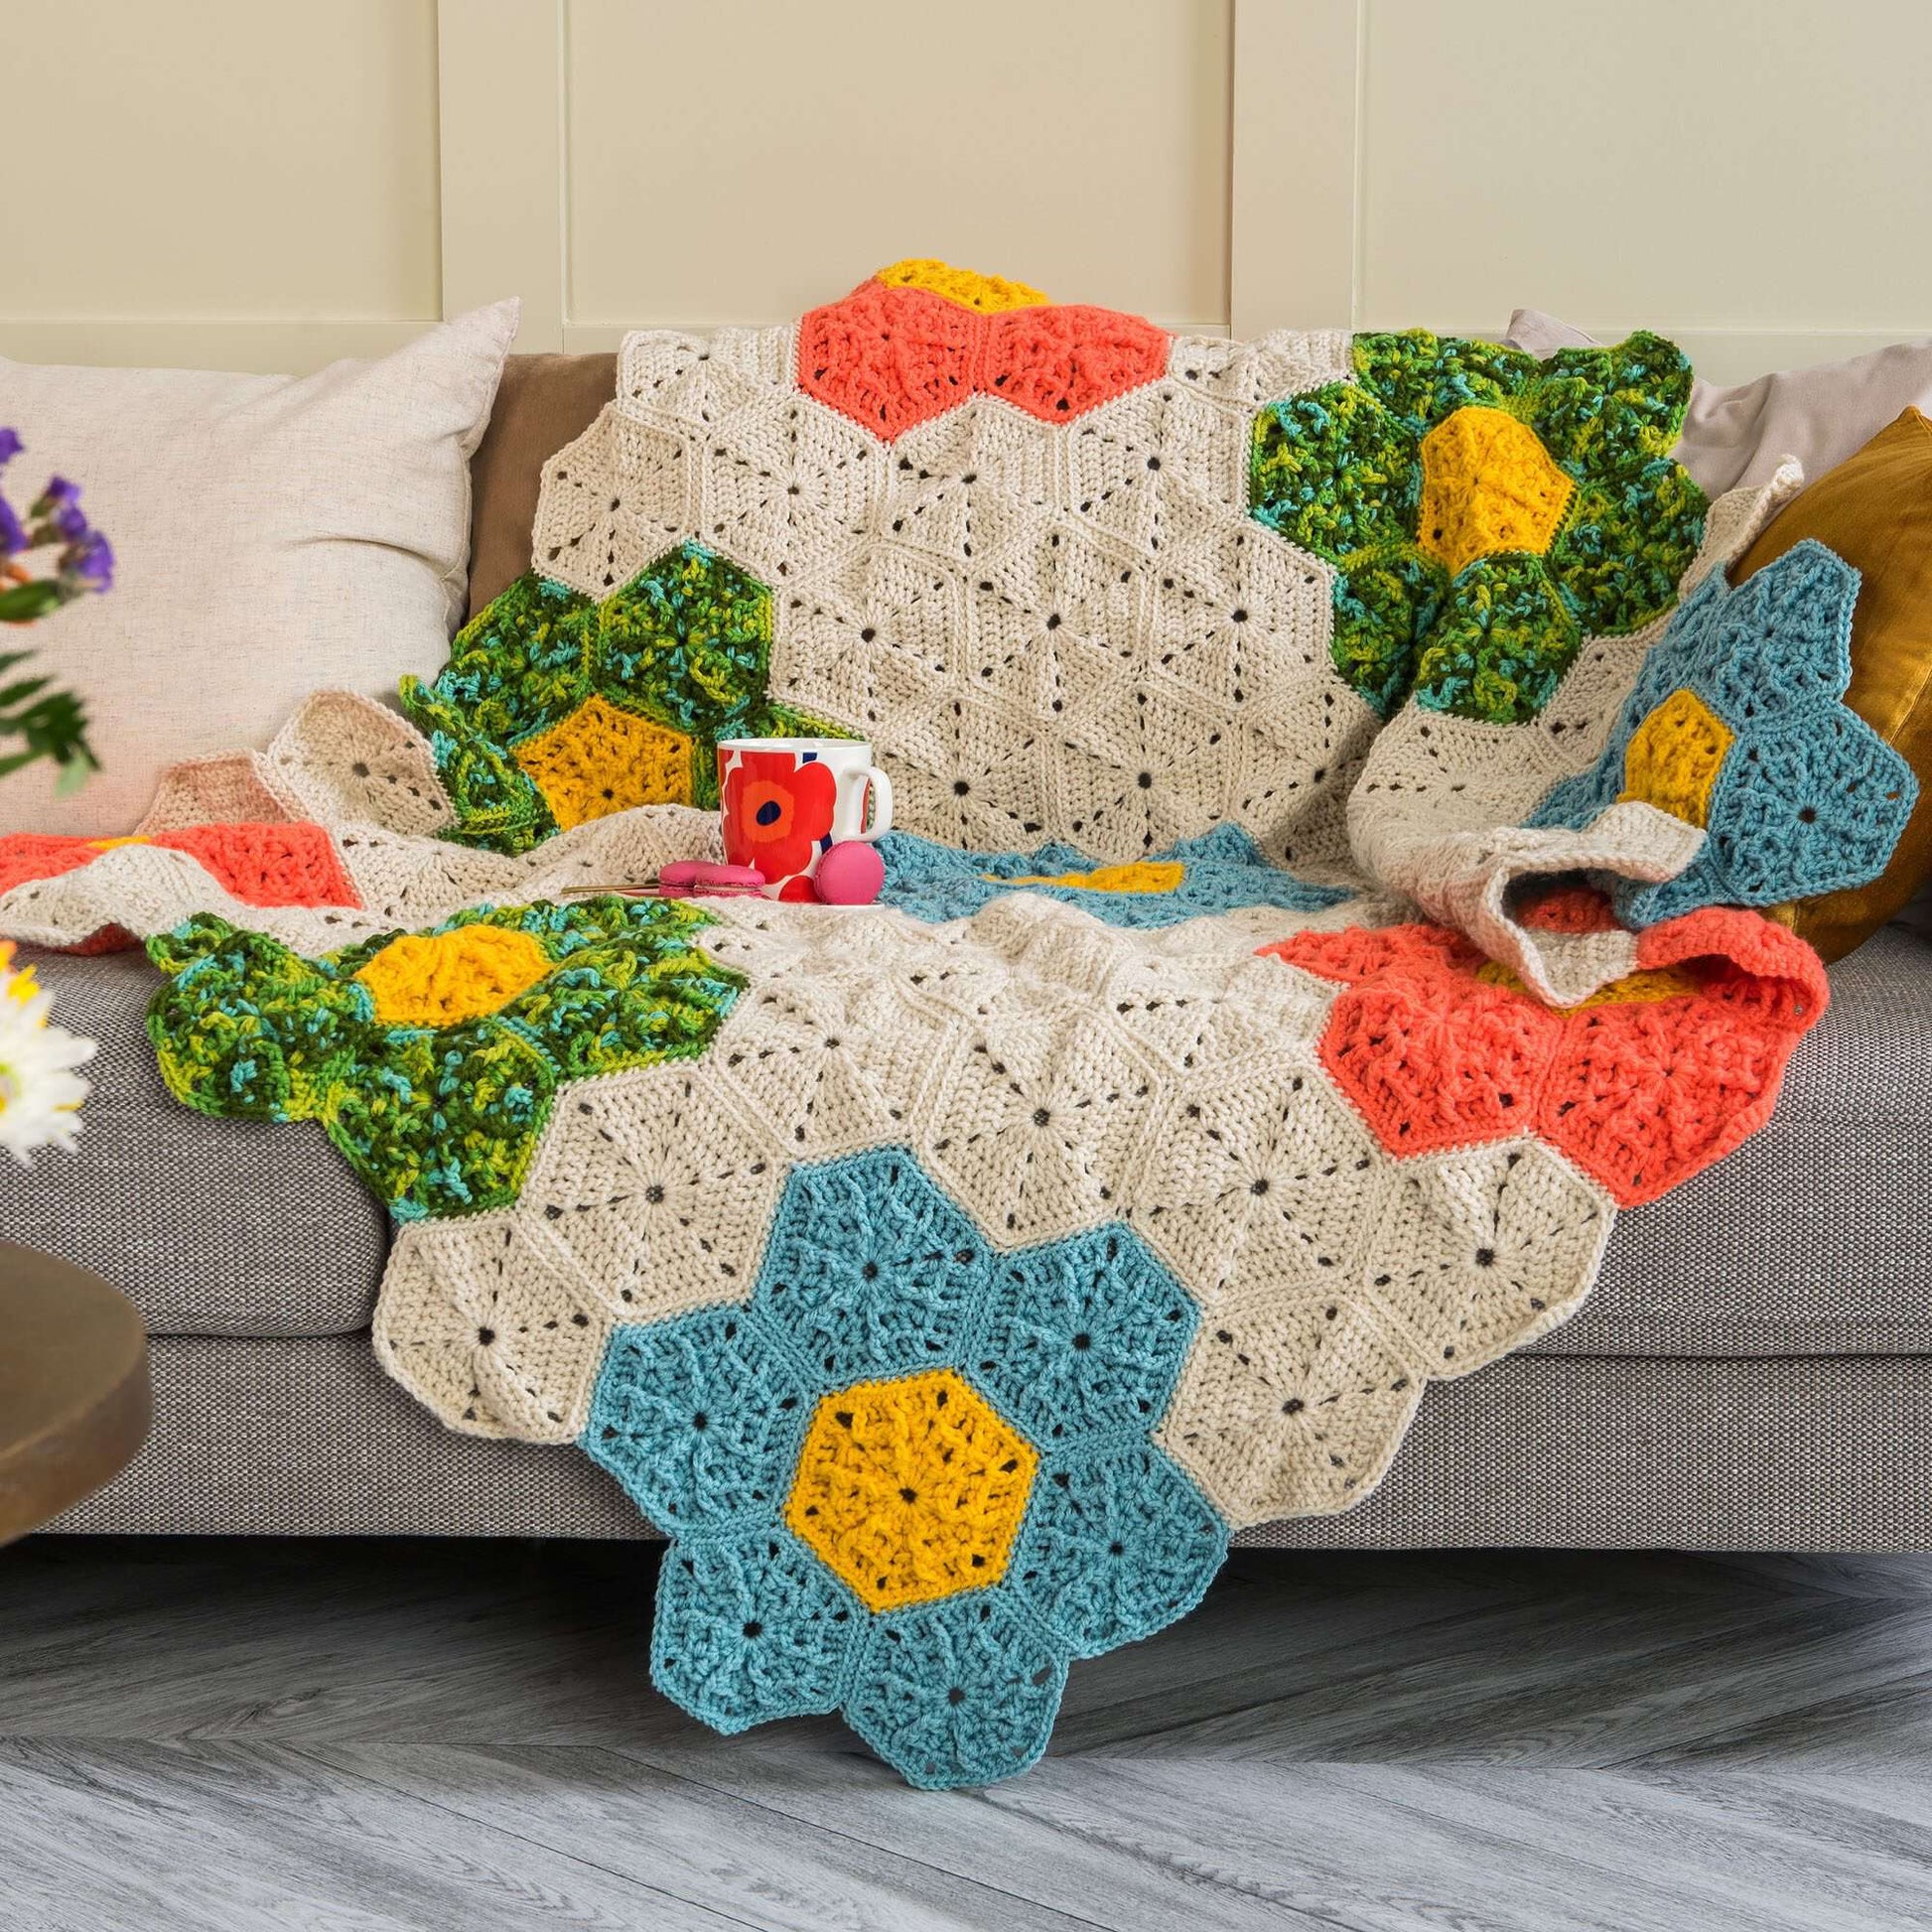 Yarn and Colors Flower Hexagon Blanket Crochet Kit 